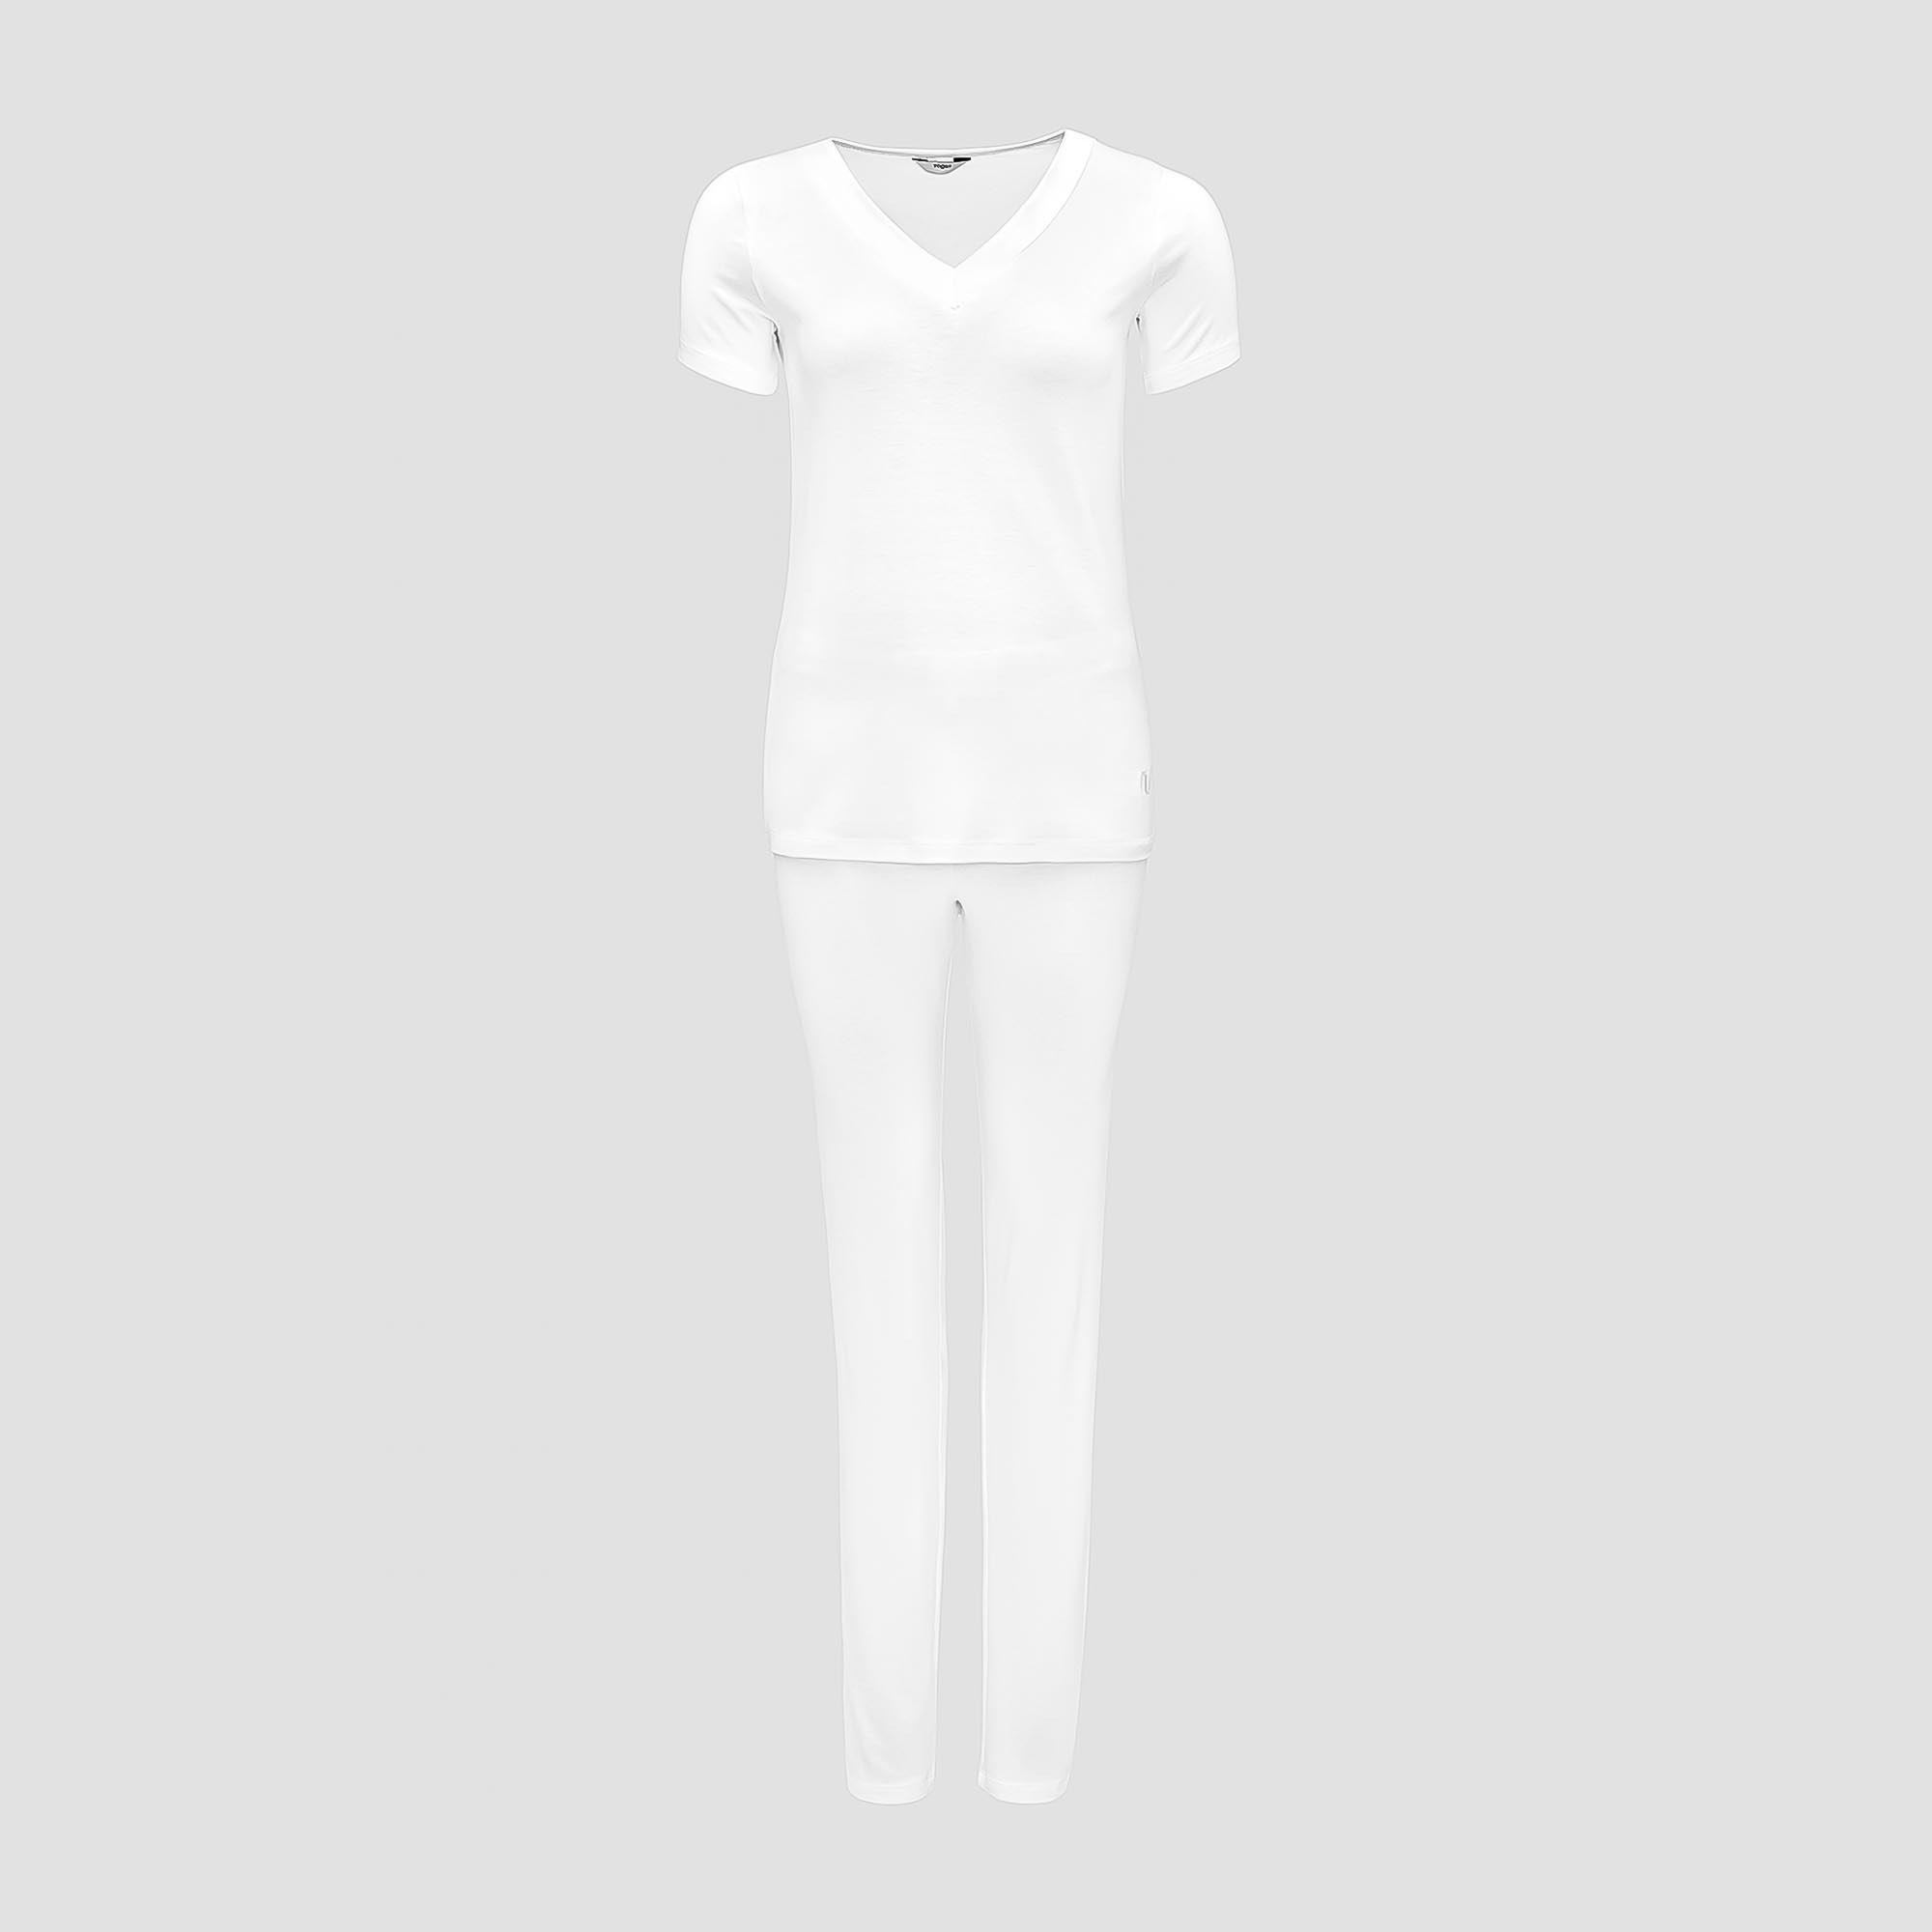 Пижама Togas Ингелла белая женская M(46) 2 предмета жен пижама с шортами инь янь белый р 54